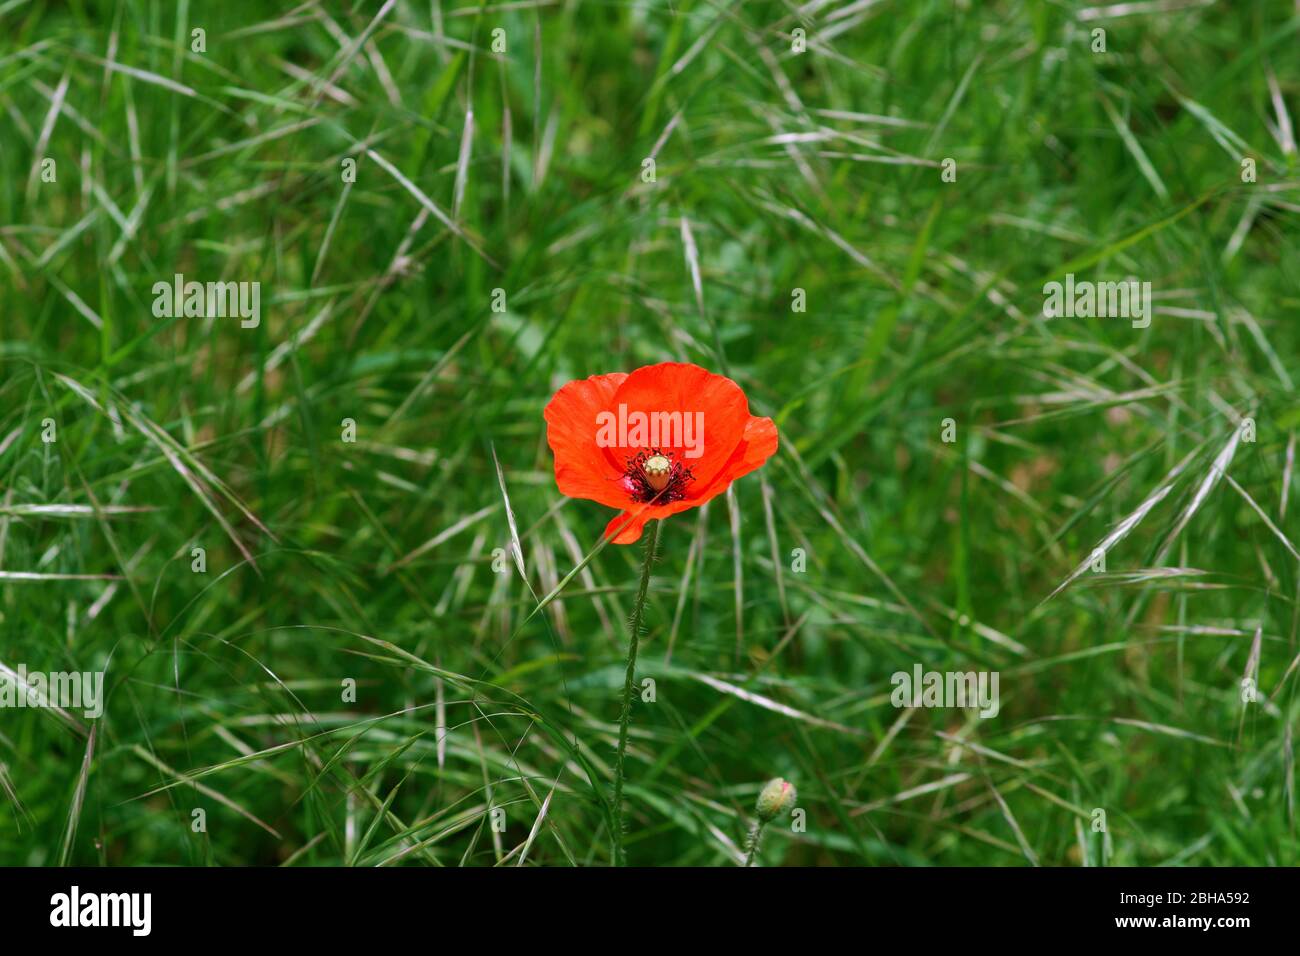 Una sola flor de amapola roja brillante en el borde de un campo, rodeada de hierba. Foto de stock